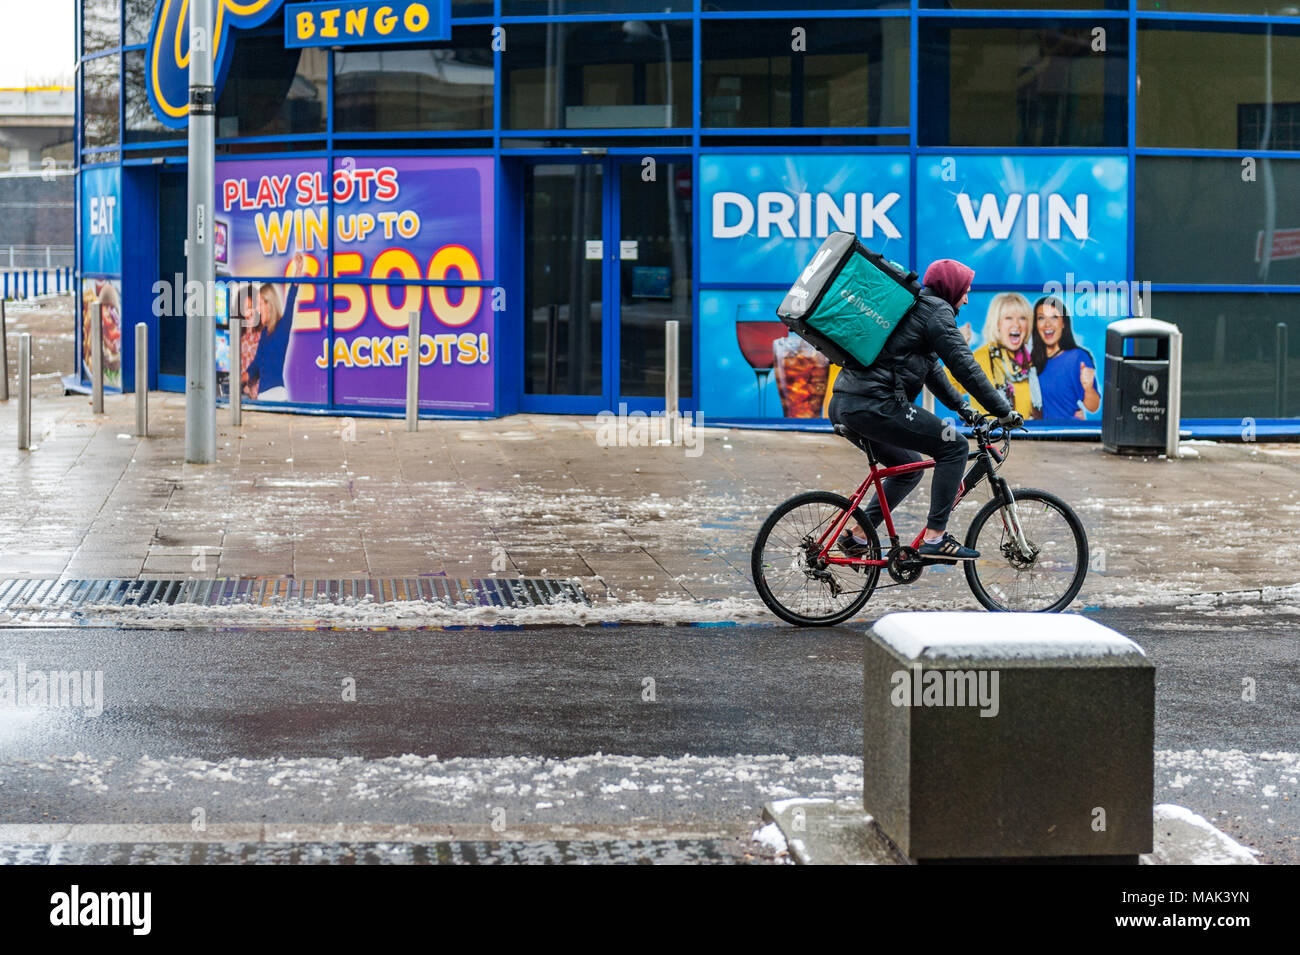 Entrega Deliveroo Deliveroo rider con una caja de Alimentos sobre sus espaldas cabalgando por Fairfax Street, Coventry, West Midlands, Reino Unido. Foto de stock